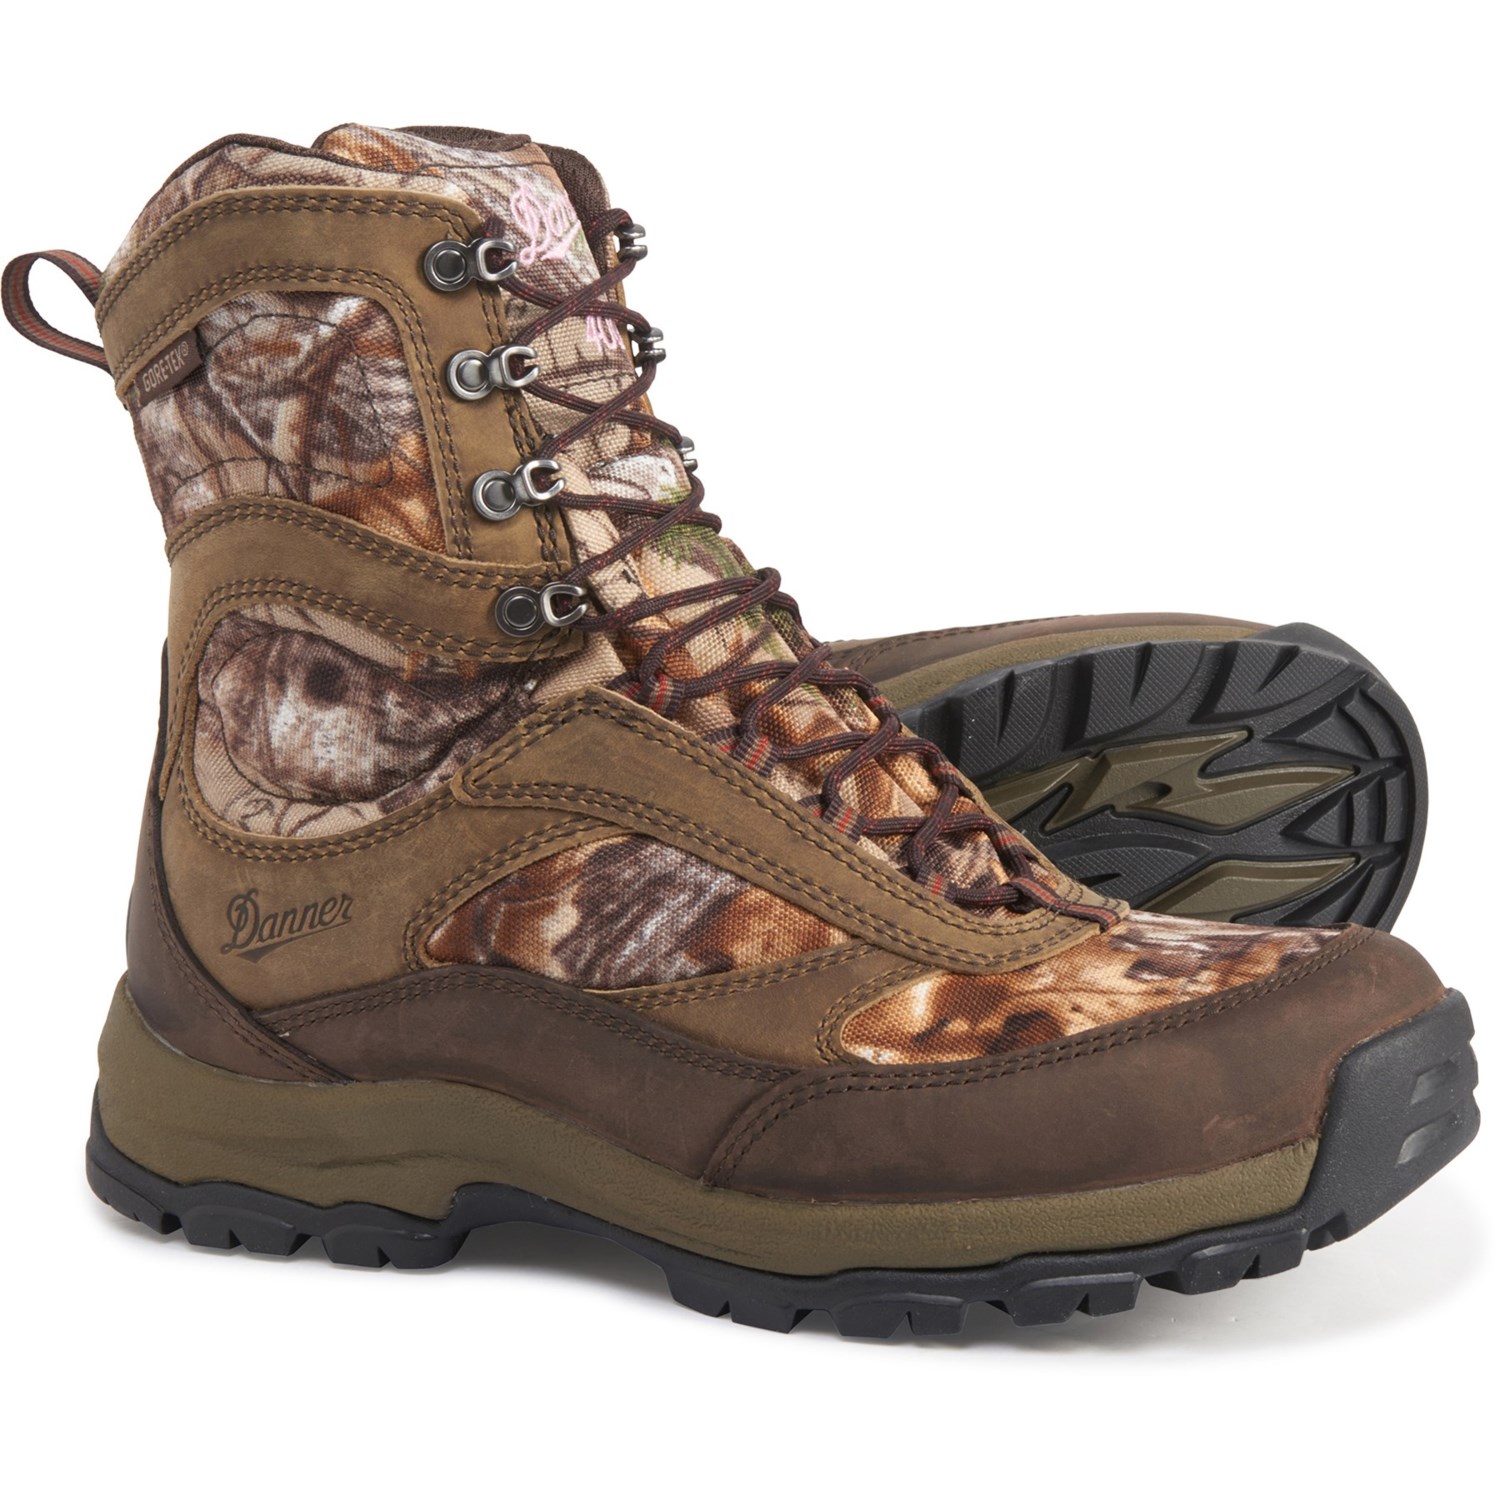 waterproof hunting boot